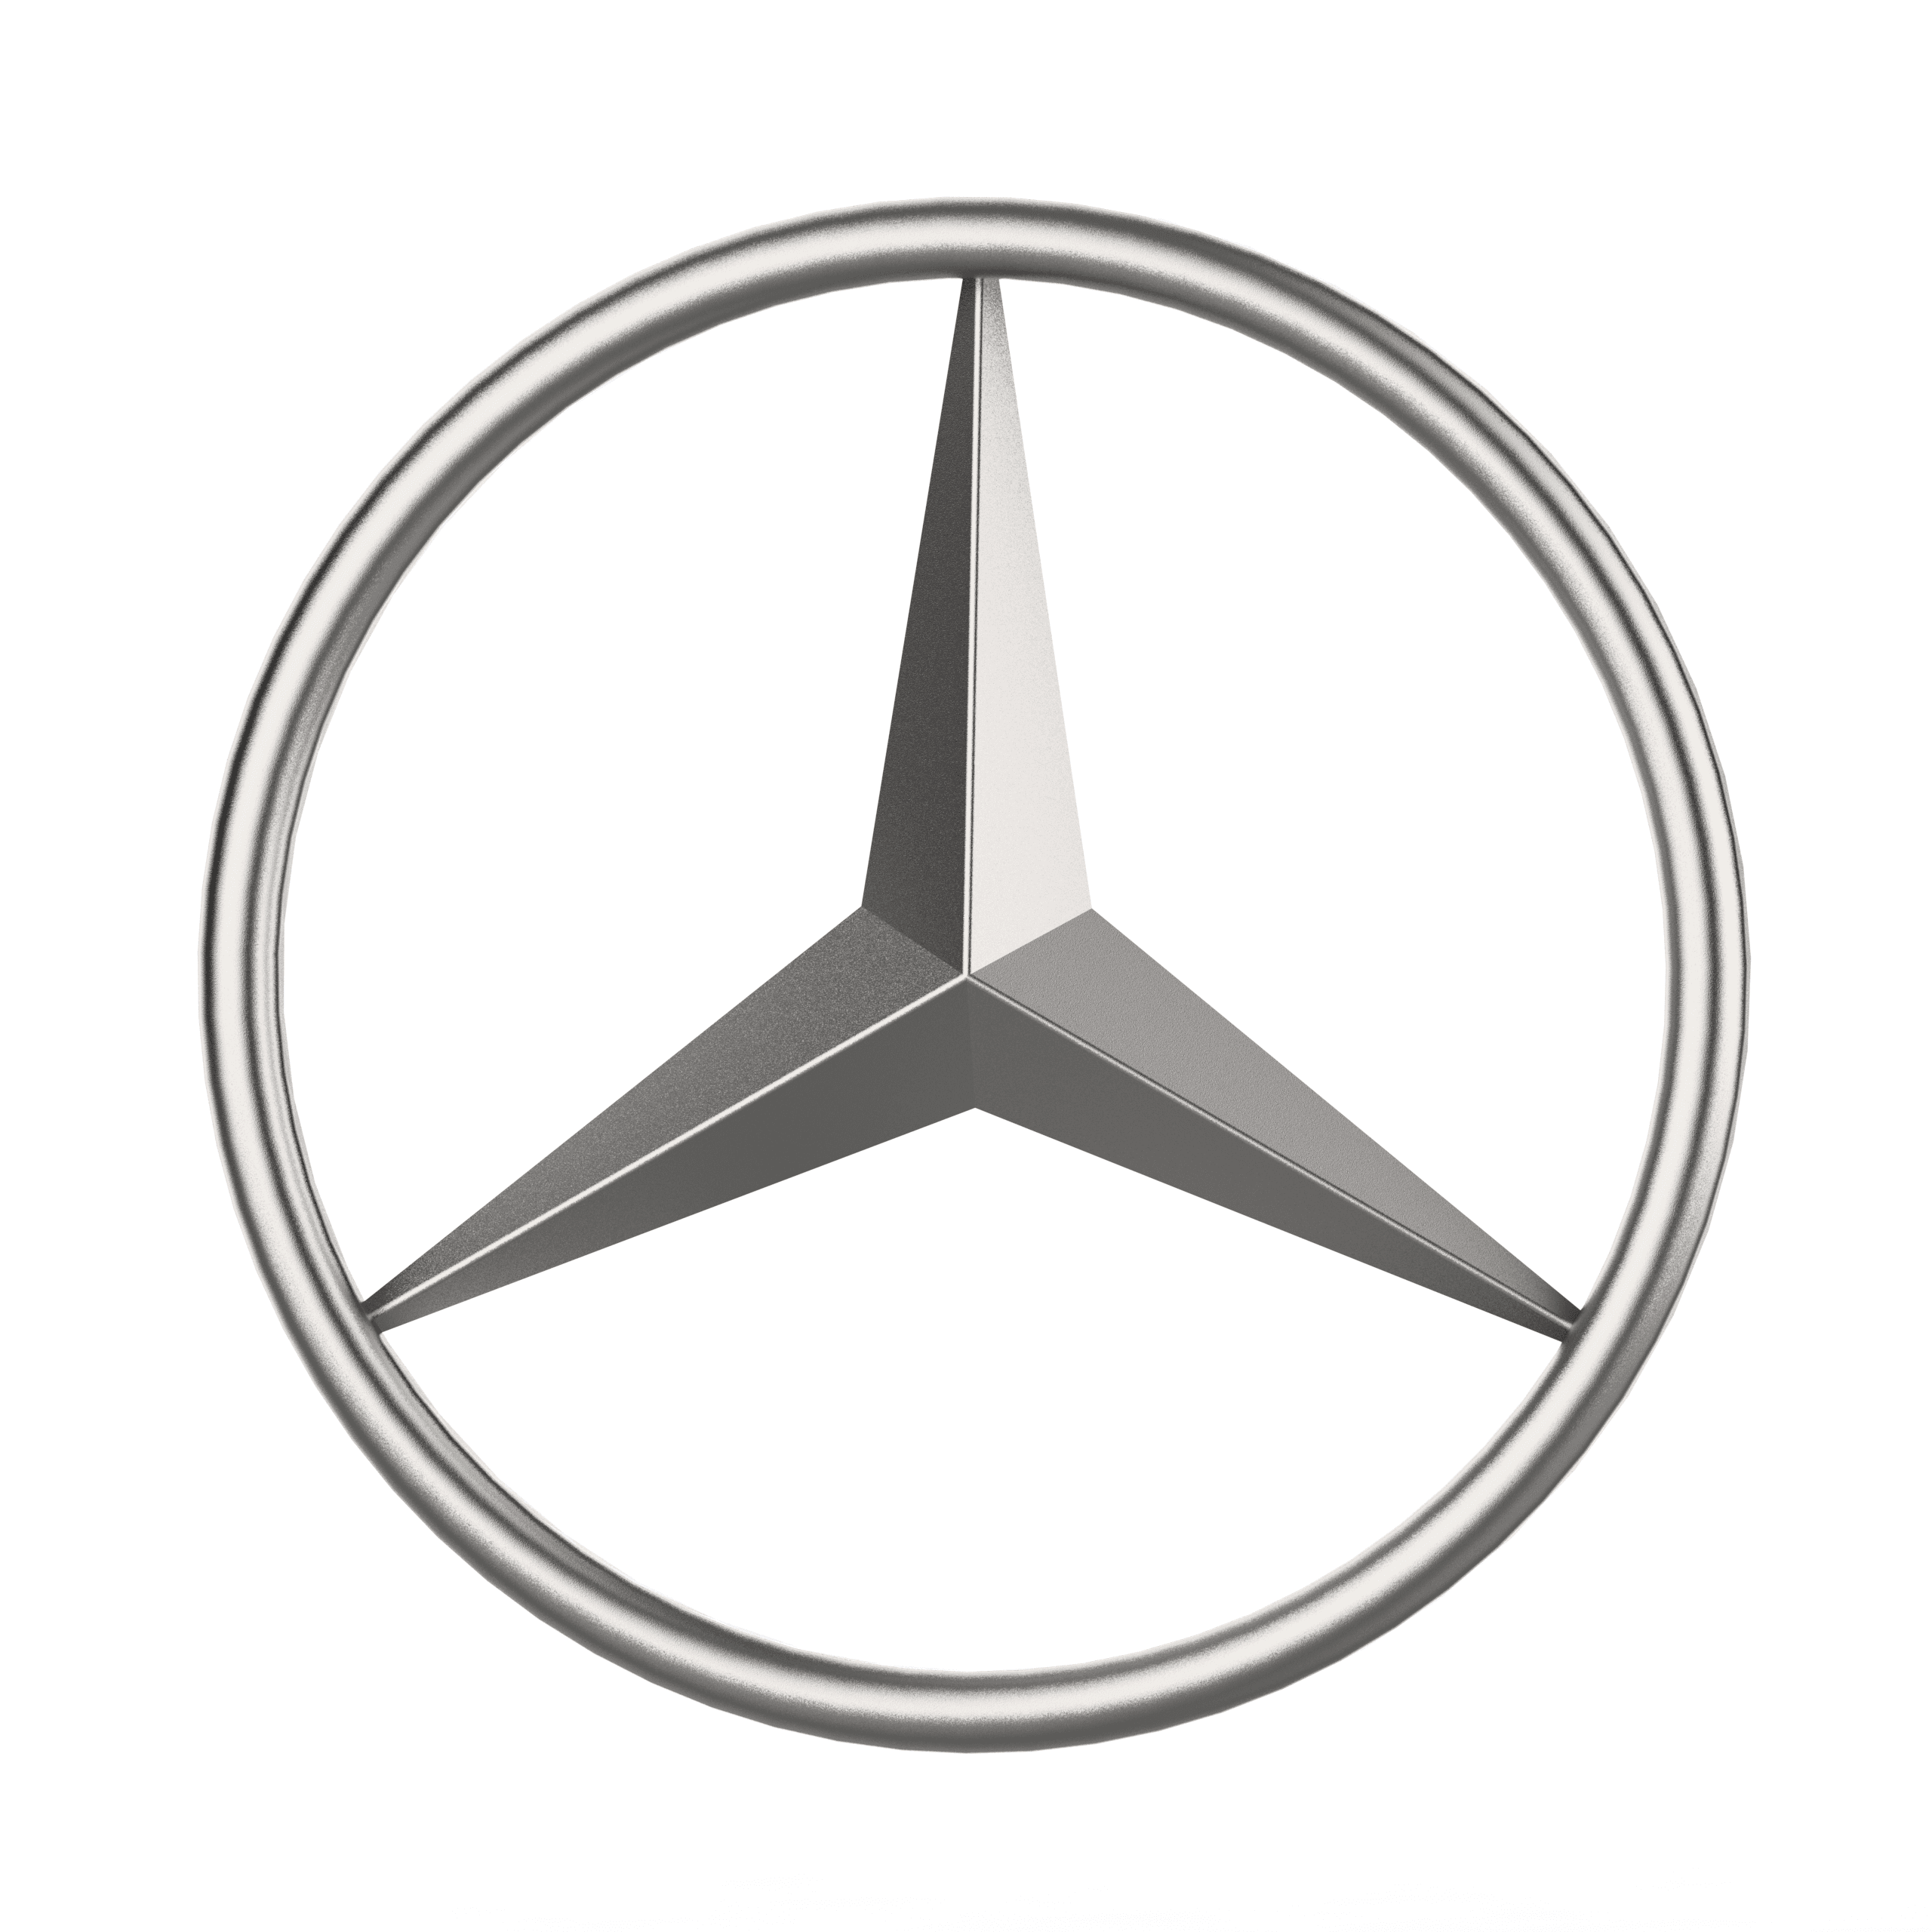 Mercedes benz logo.STL 3d model